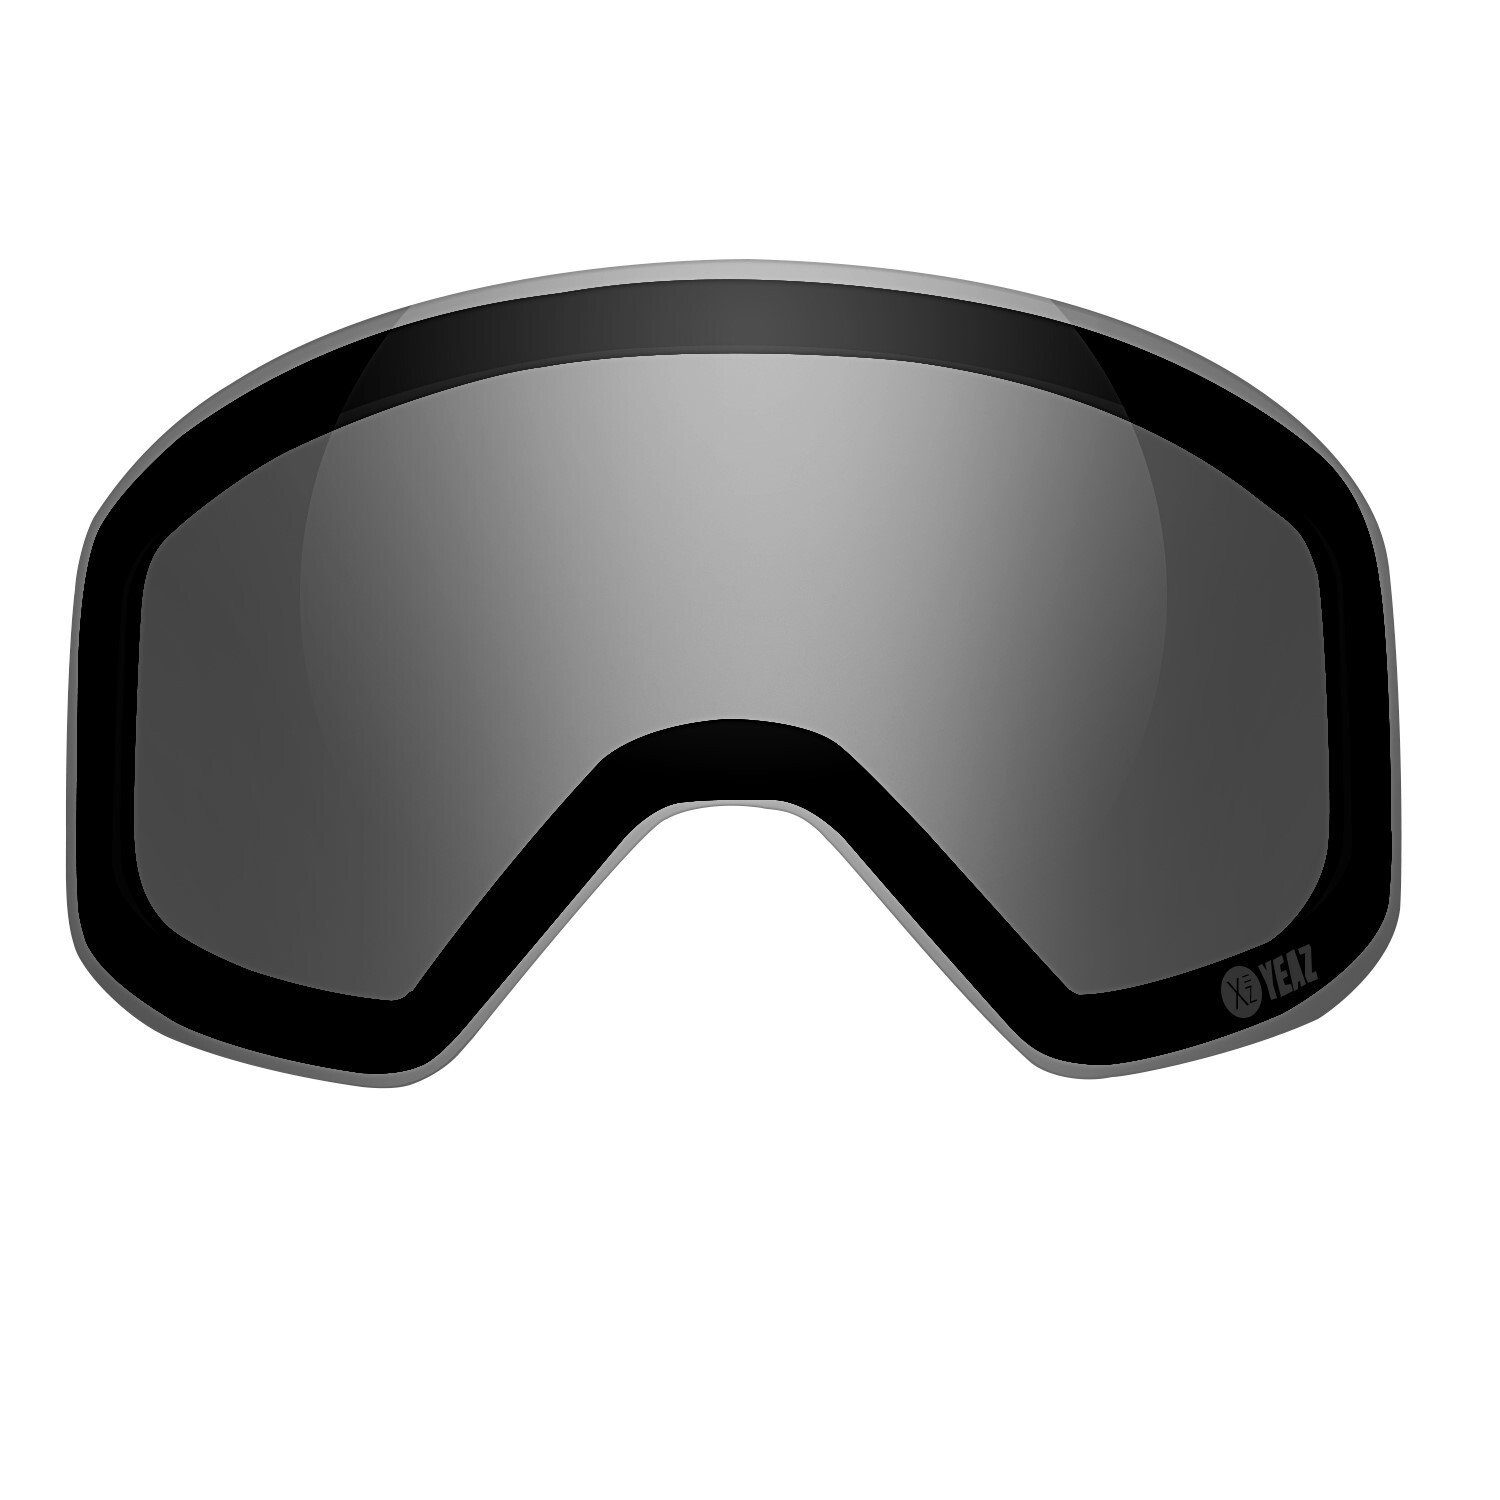 APEX Skibrille YEAZ magnetisches wechselglas, APEX polarisiertes für Skibrille Ersatzglas